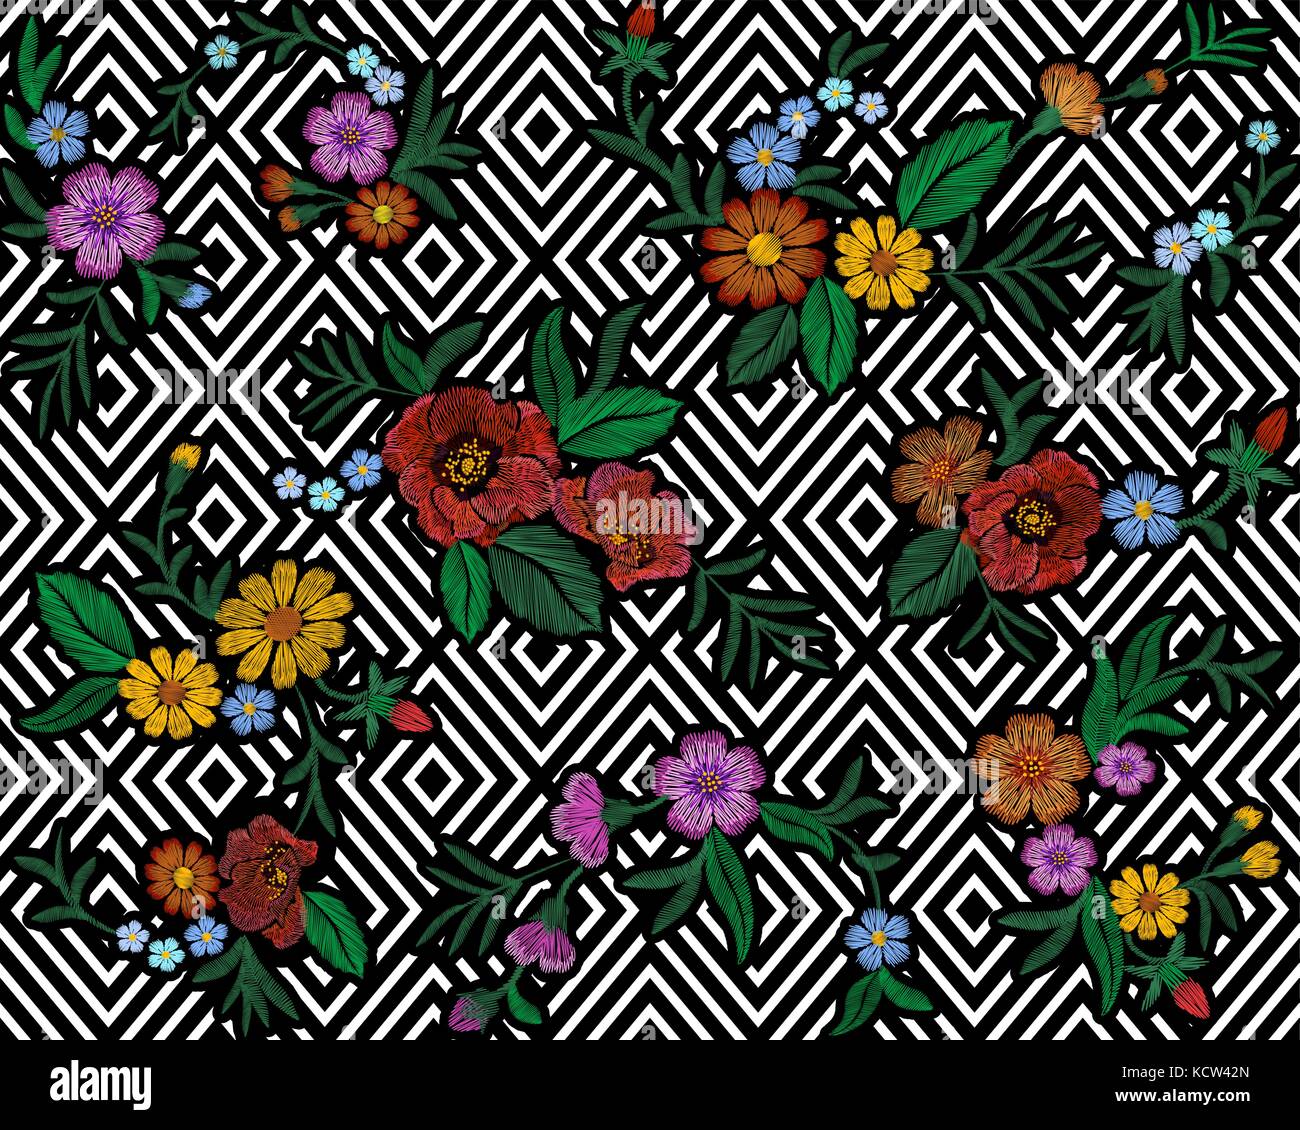 Broderie motif floral coloré avec chien roses et fleurs ne m'oublie pas. vecteur de mode populaire traditionnelle ornement sur fond transparent noir. Illustration de Vecteur